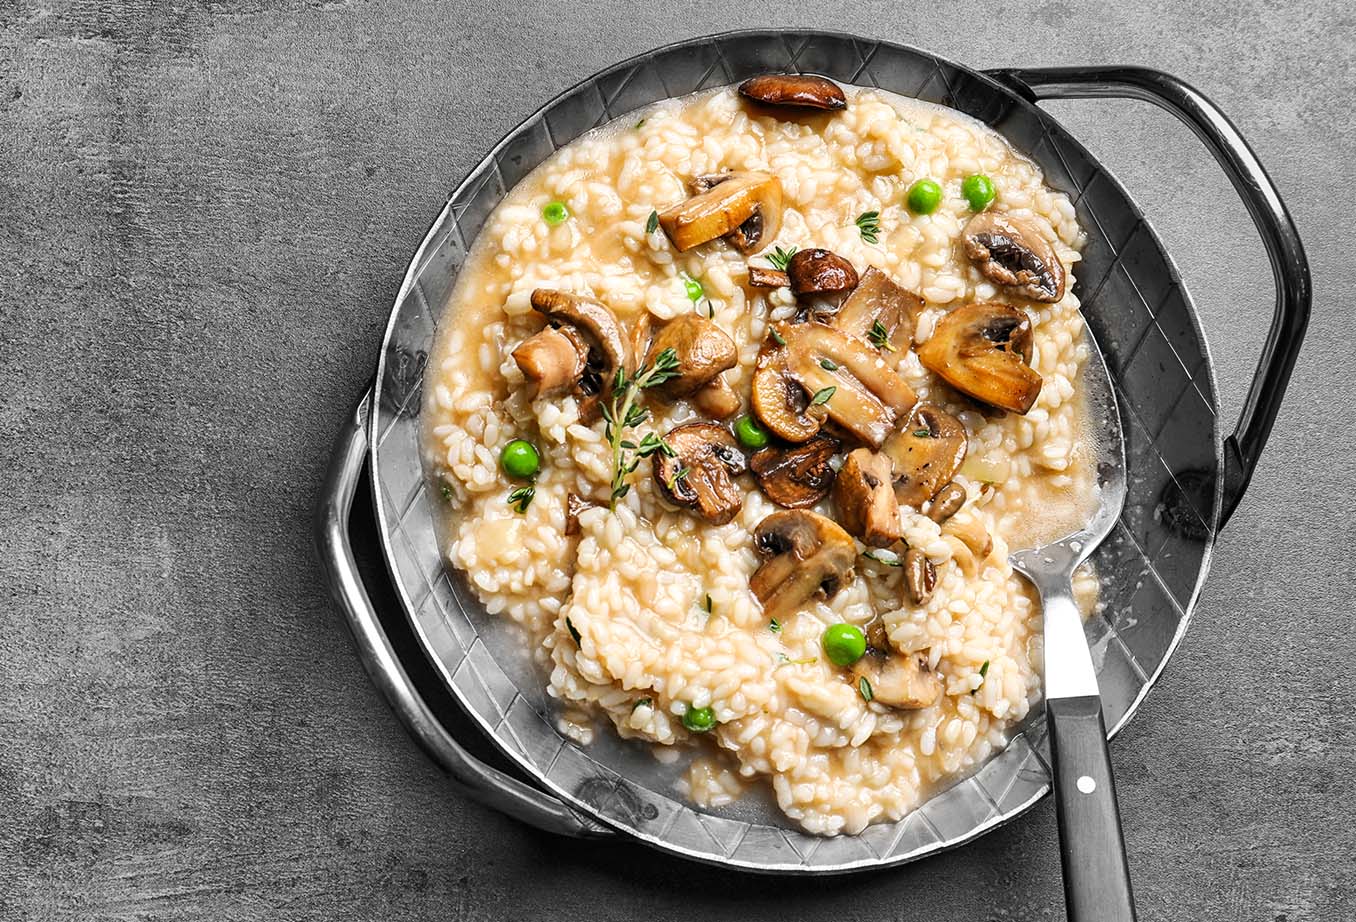 Le risotto aux champignons et petits pois, pour un plat onctueux et savoureux !